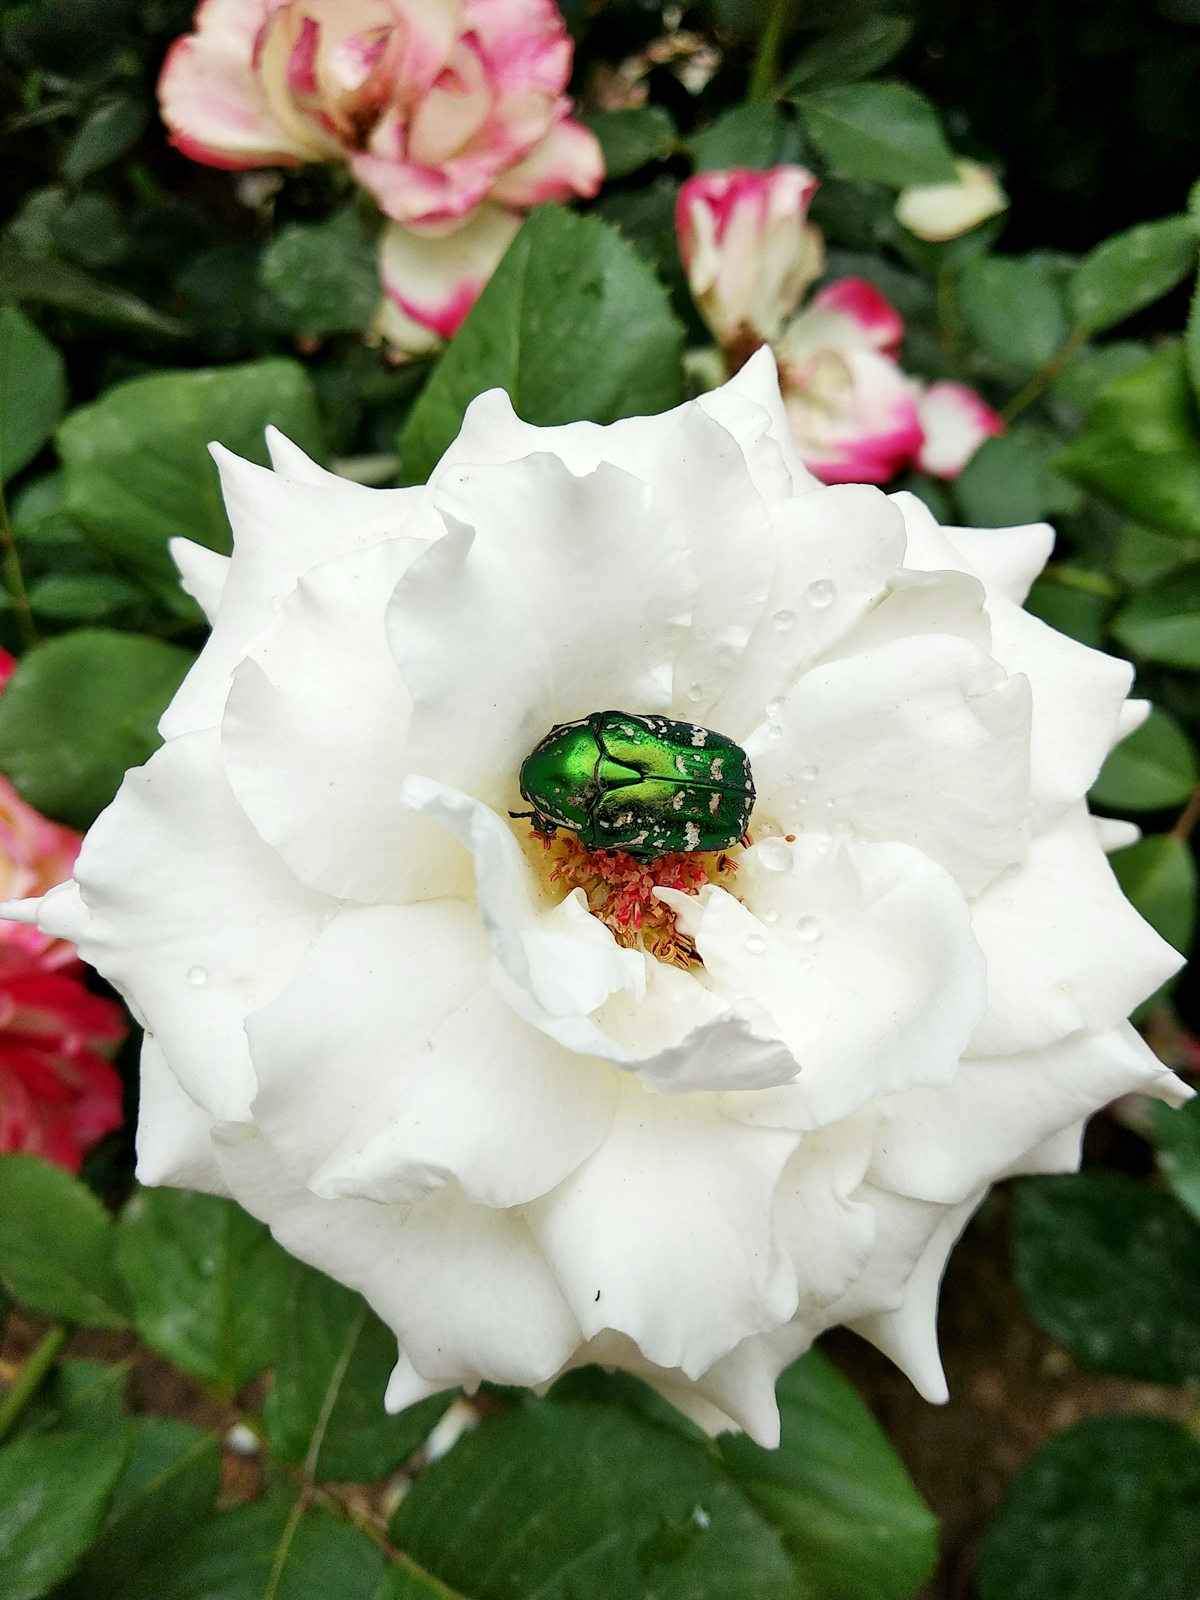 gruenes insekt in weisser rose insekt glaenzend 